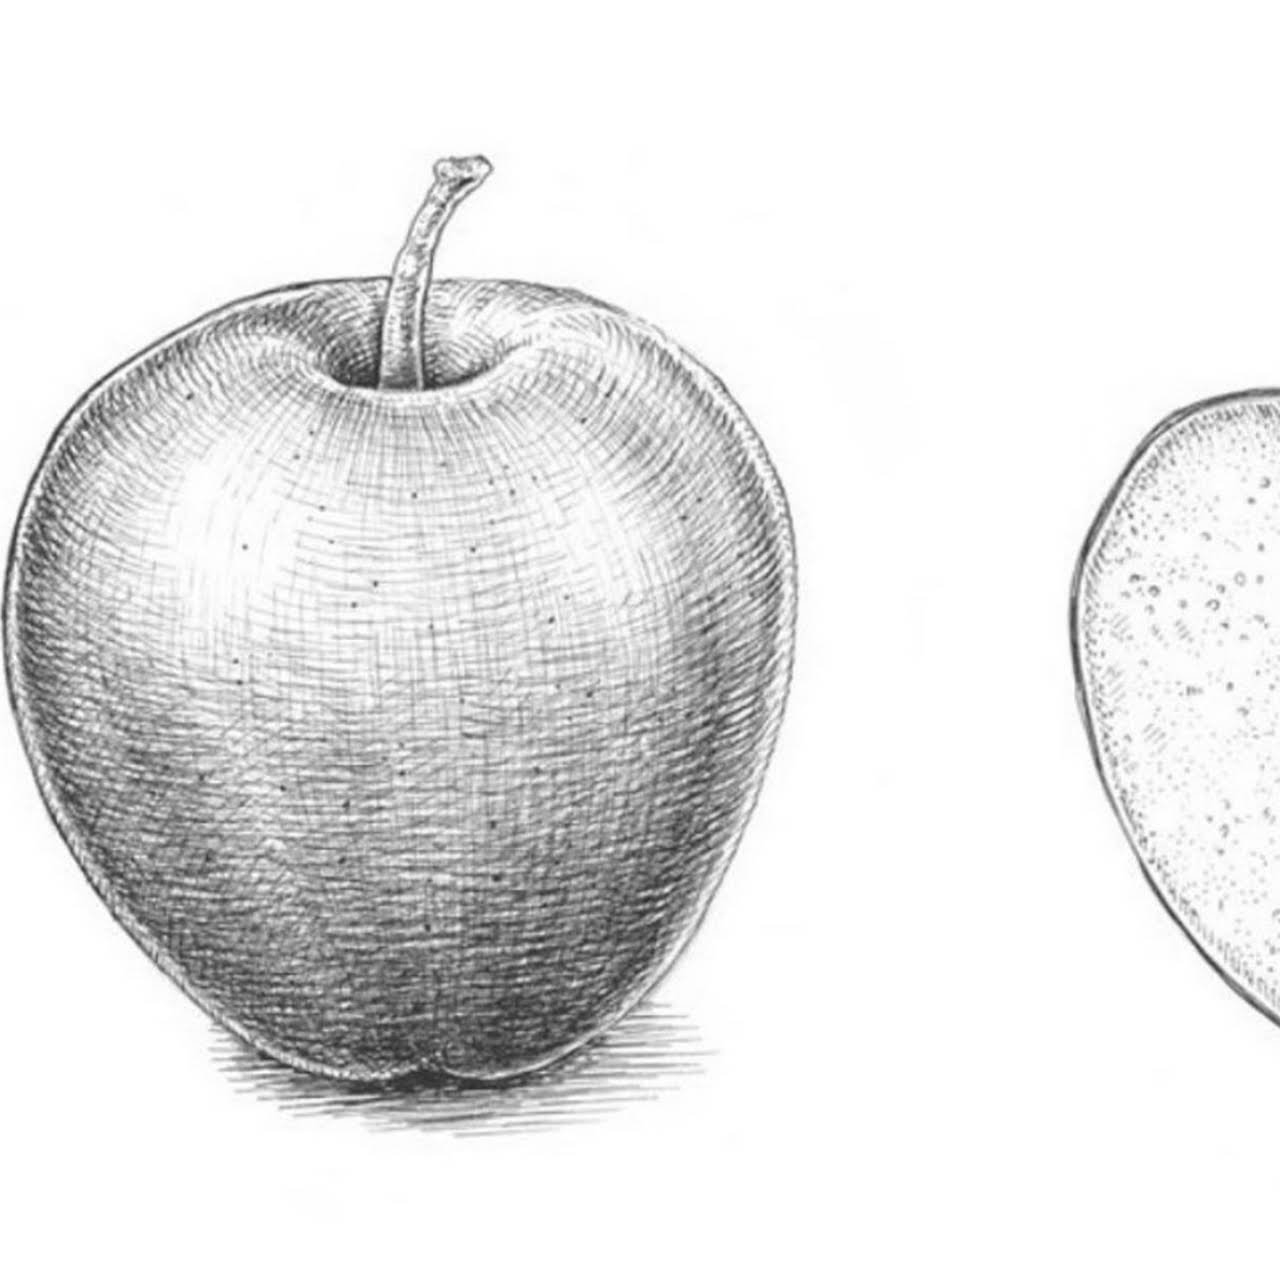 Яблоня карандашом. Яблоко карандашом. Яблоко рисунок карандашом. Рисуем яблоко карандашом. Яблоко штриховка карандашом.